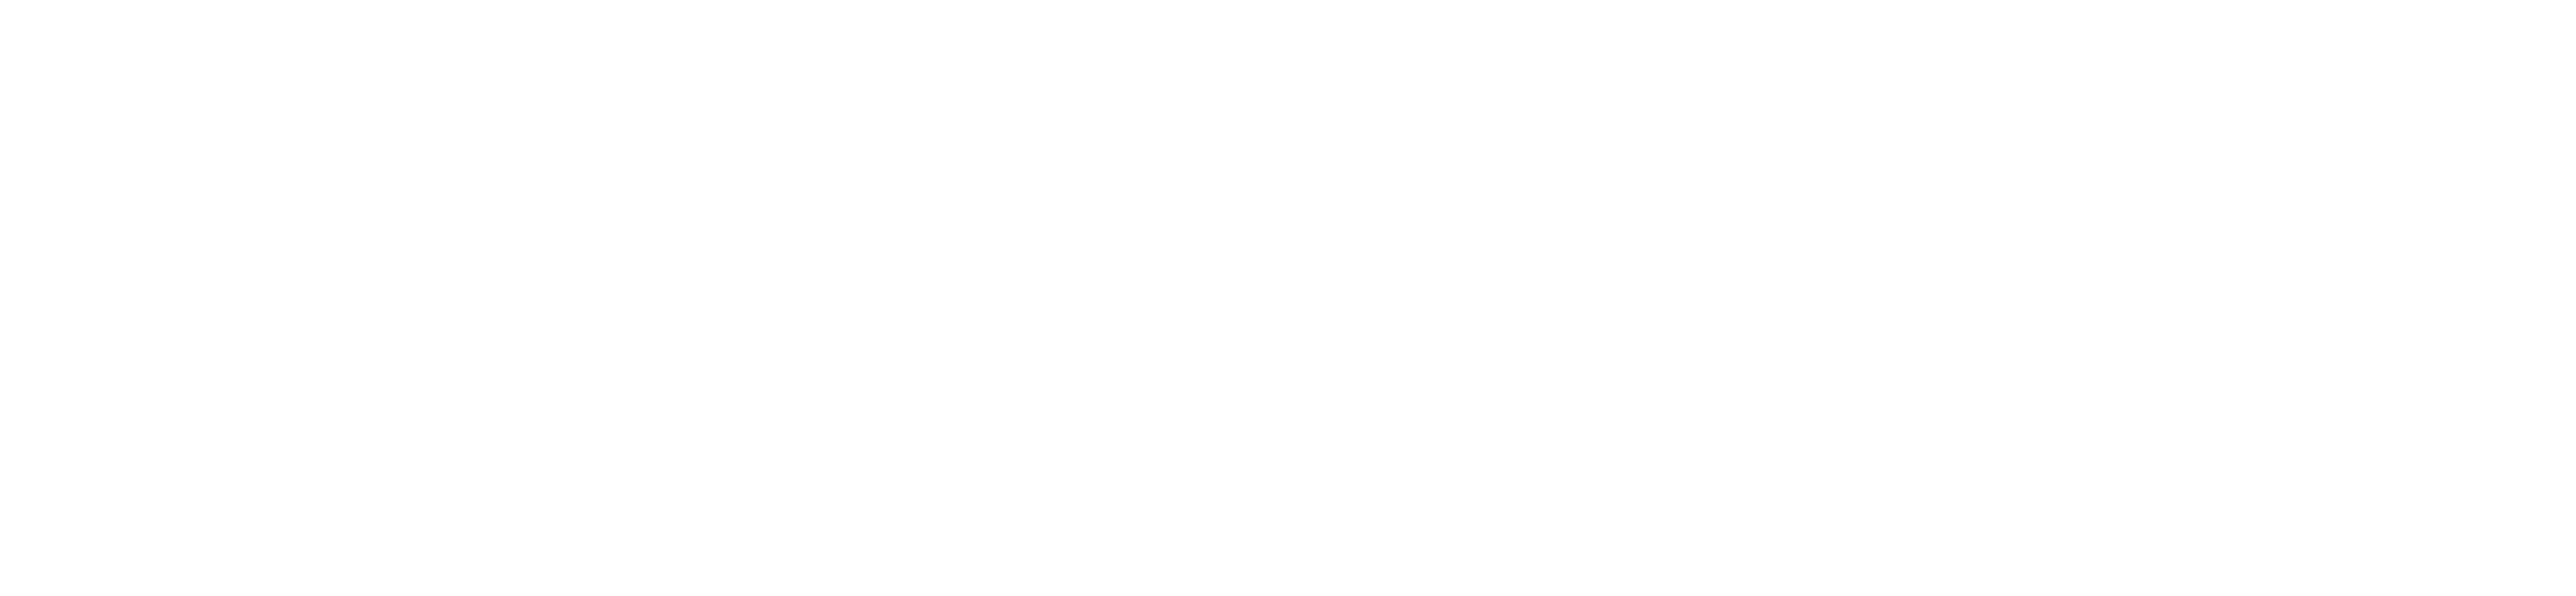 Logo FIERCE RESIDENCE